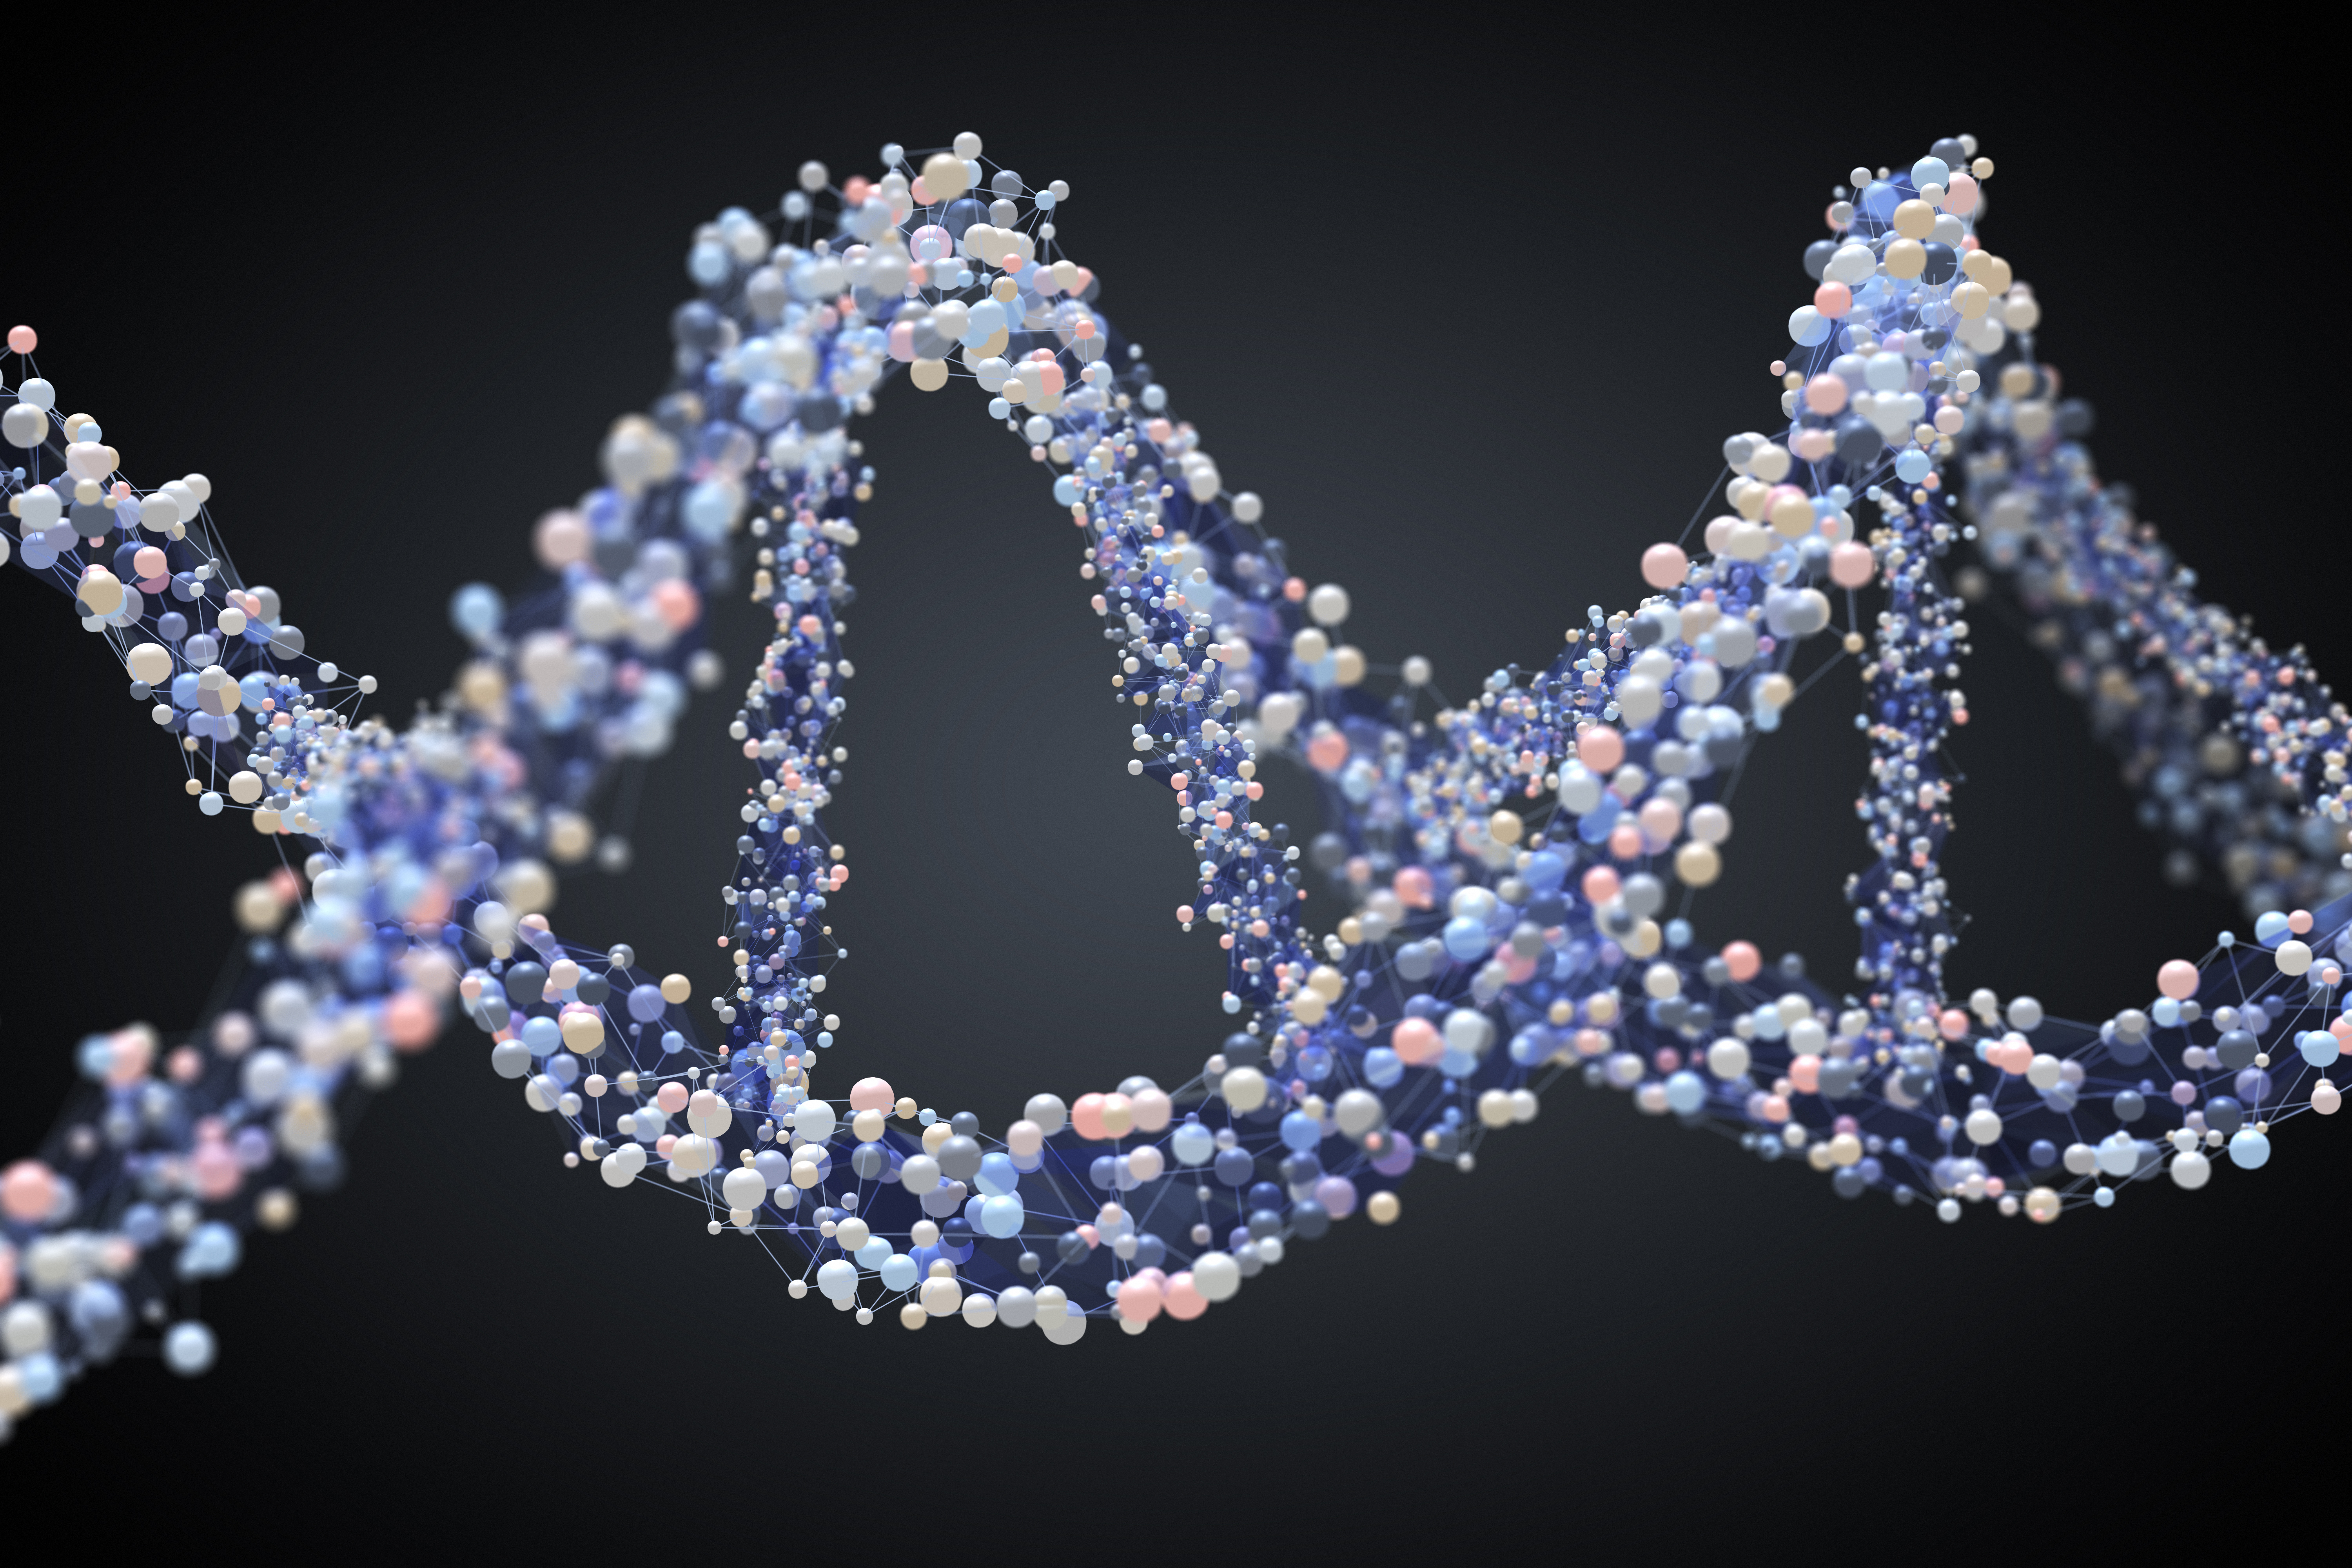 ကြယ်ပွင့်ထုတ်ကုန်များ |အဆင့်တစ်ဆင့်တွင် မျိုးရိုးဗီဇ DNA ရှင်းလင်းခြင်း + ပြောင်းပြန် စာသားမှတ်တမ်း။